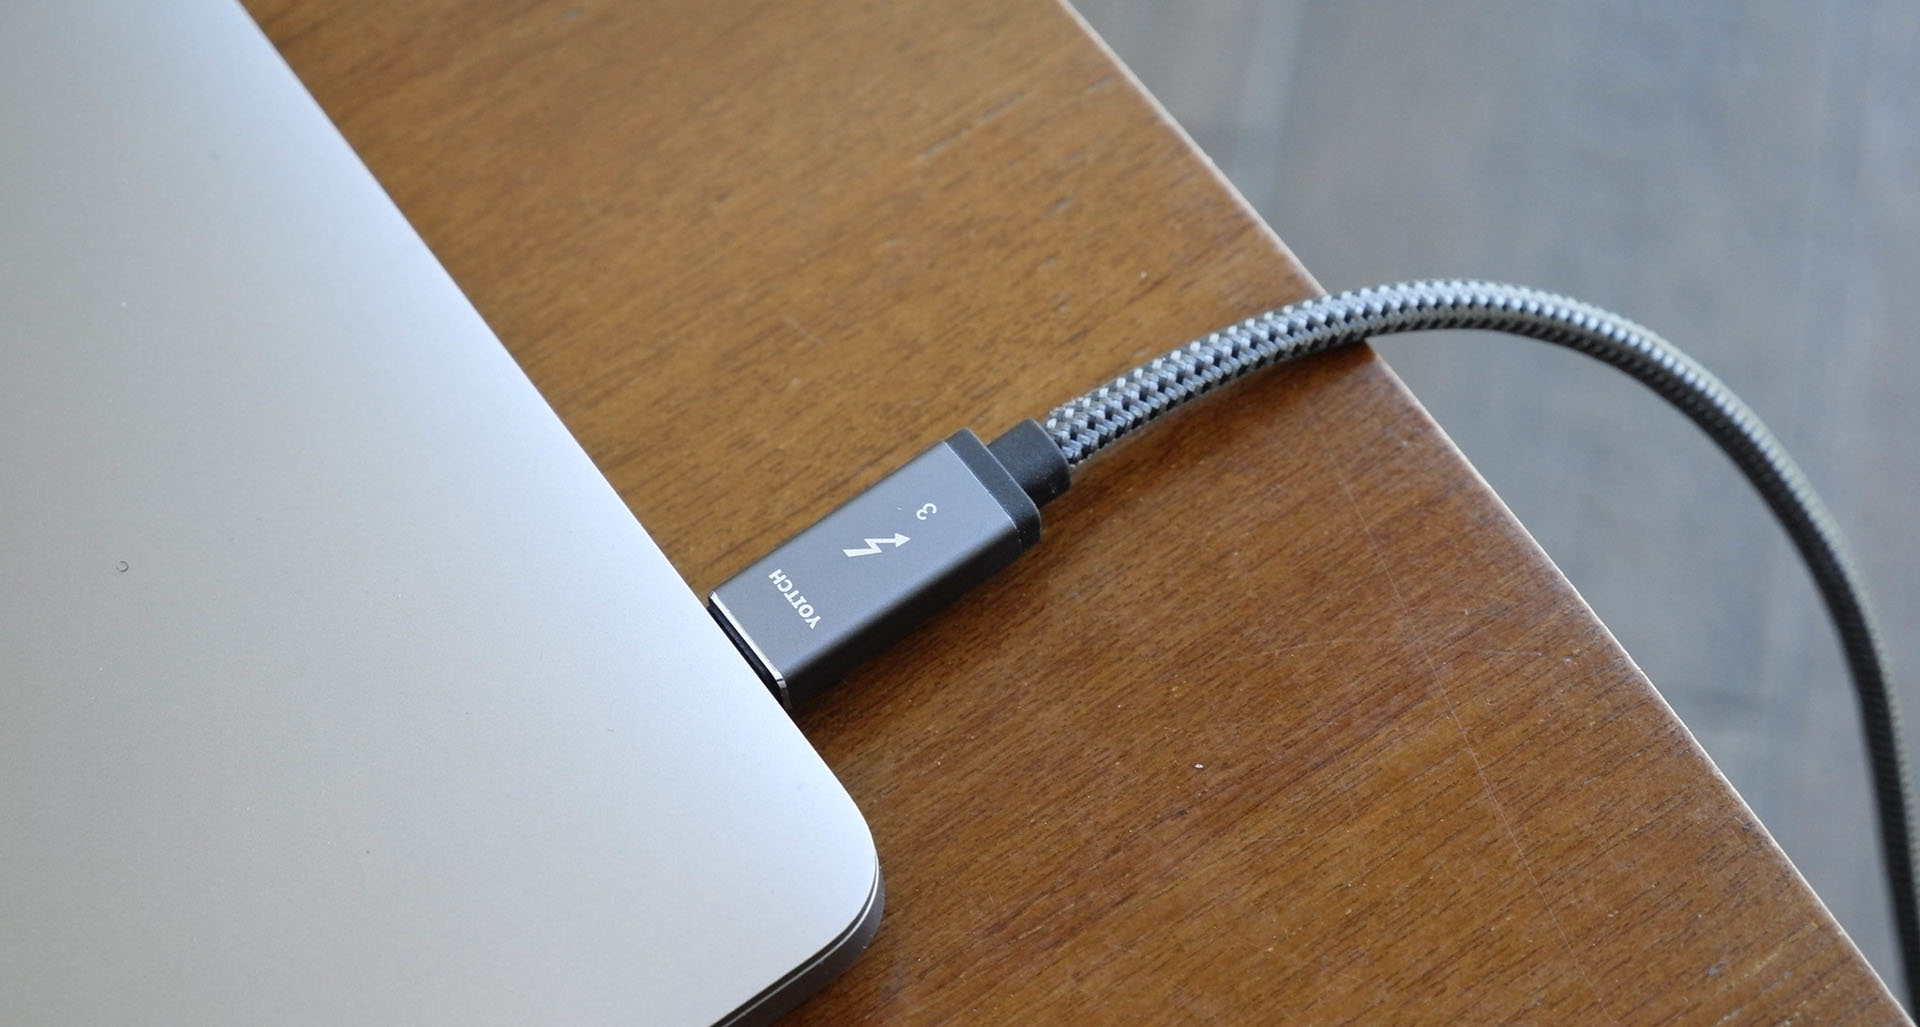 L'USB-C est formidable, mais attention : les câbles, chargeurs et